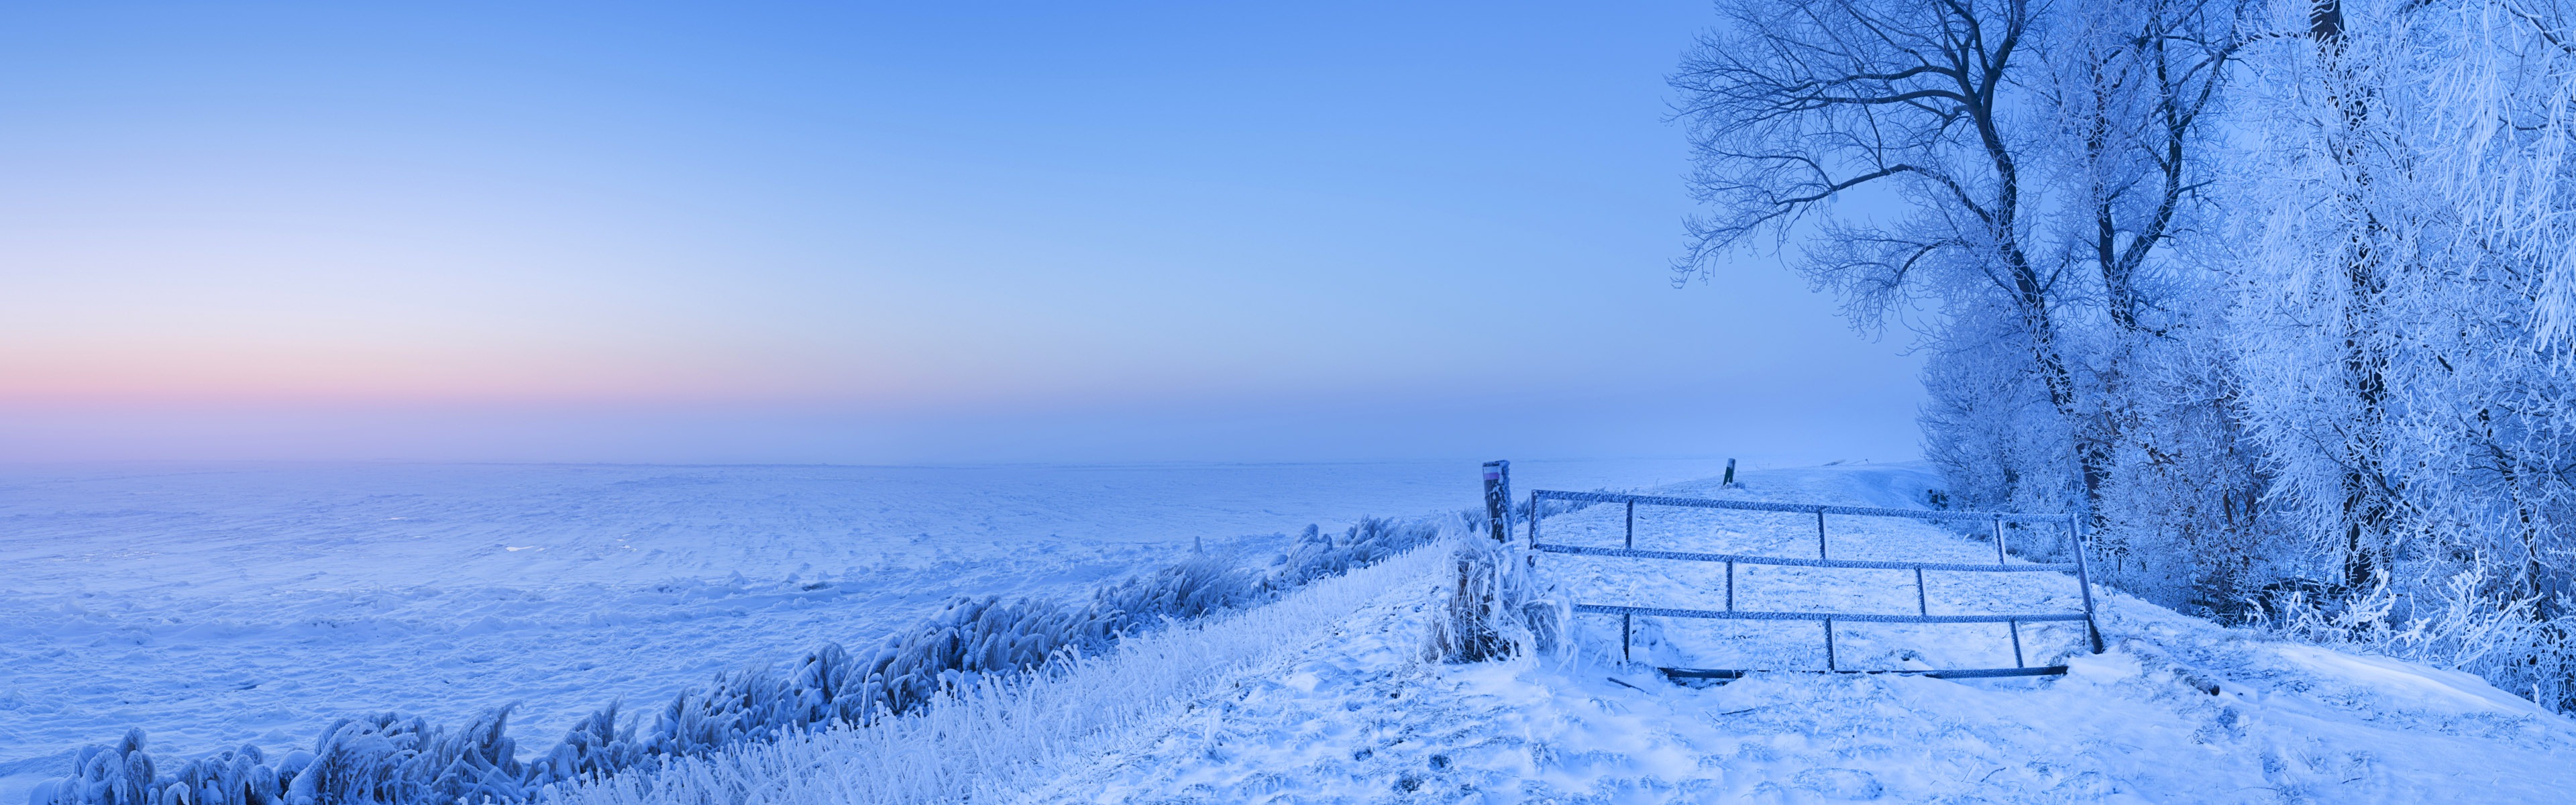 Belle neige froide d'hiver, de Windows 8 fonds d'écran widescreen panoramique #2 - 3840x1200